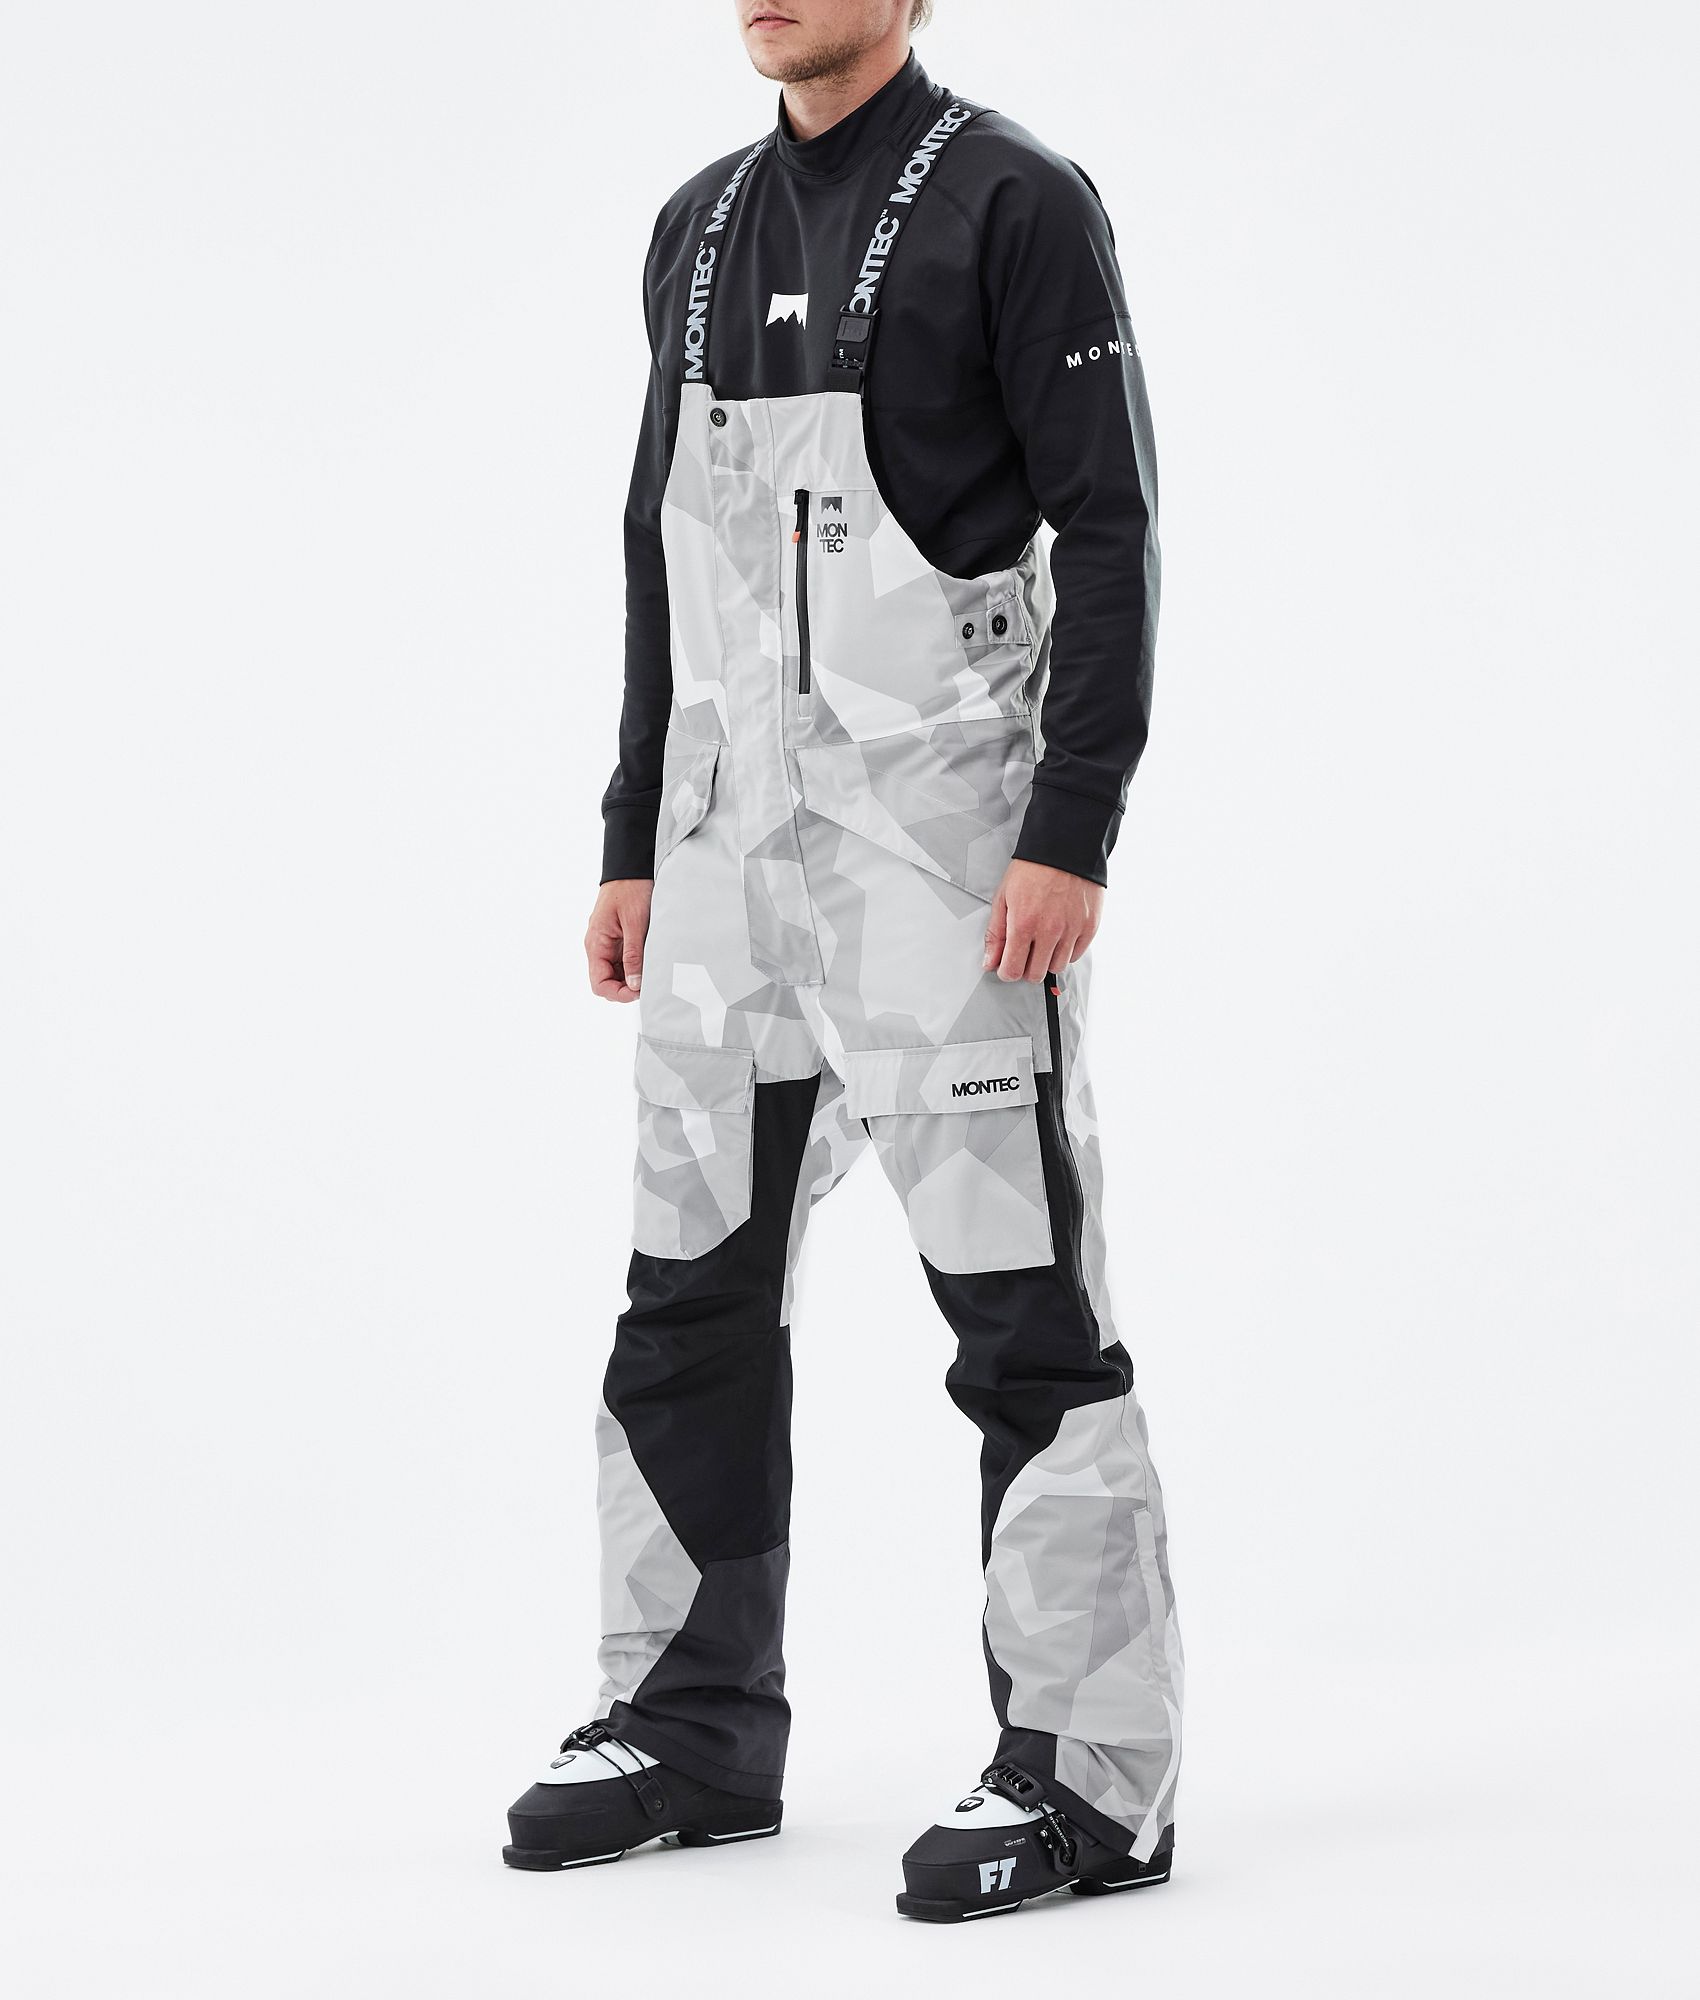 BOGNER Sport Trey Ski trousers for men